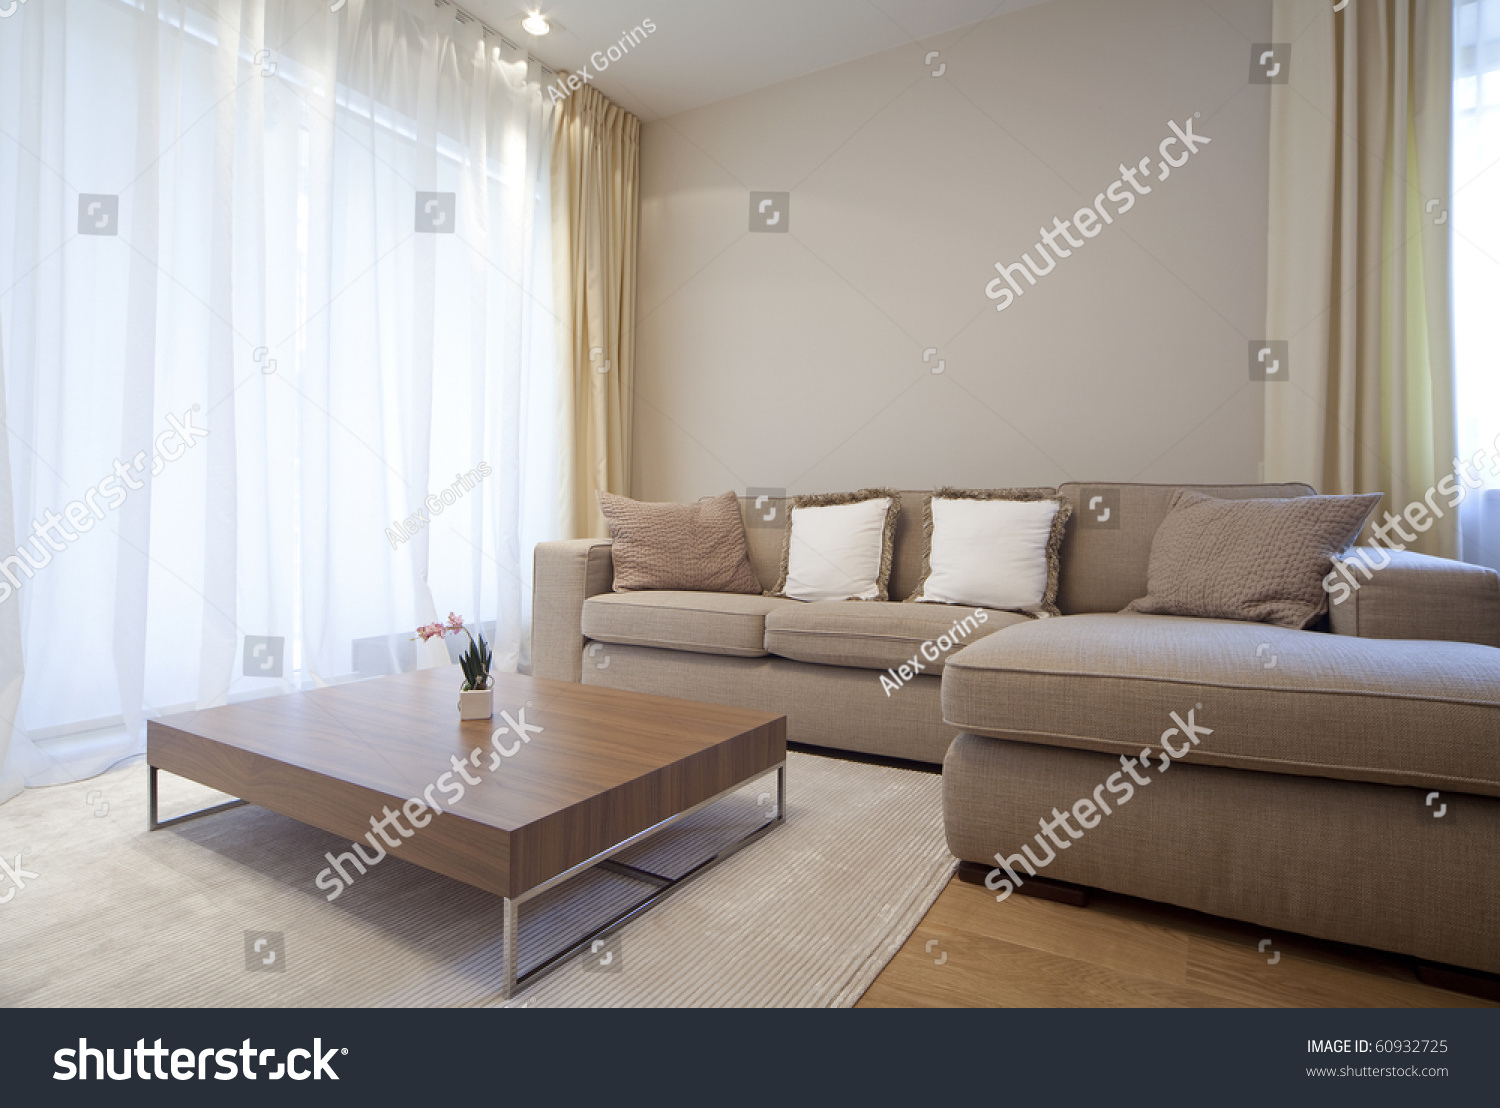 Modern living room #60932725